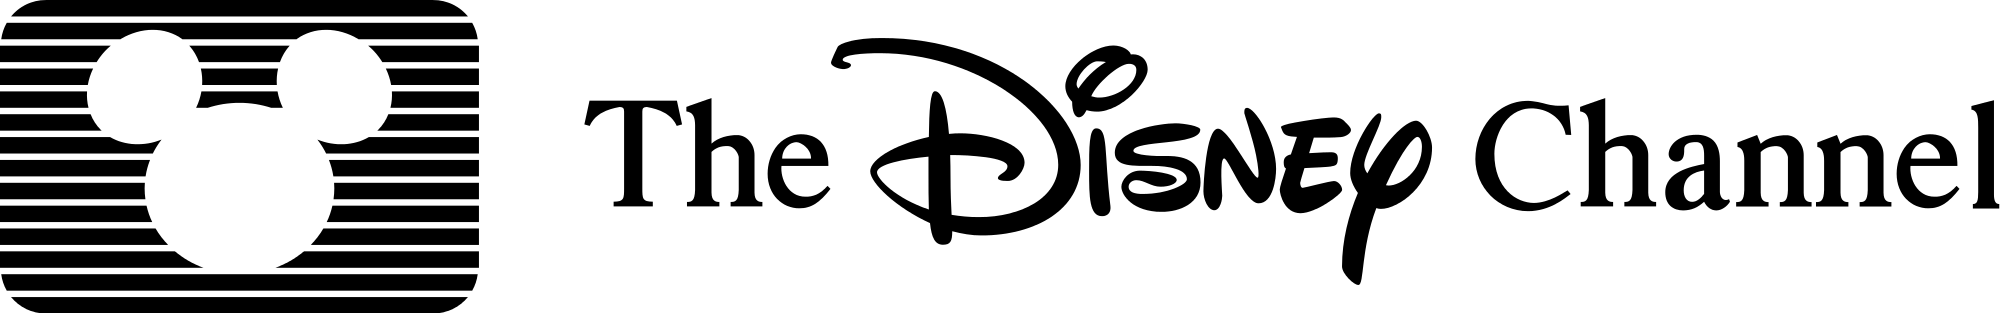 Old Walt Disney Logo - File:Walt Disney channel logo old.svg - Wikimedia Commons